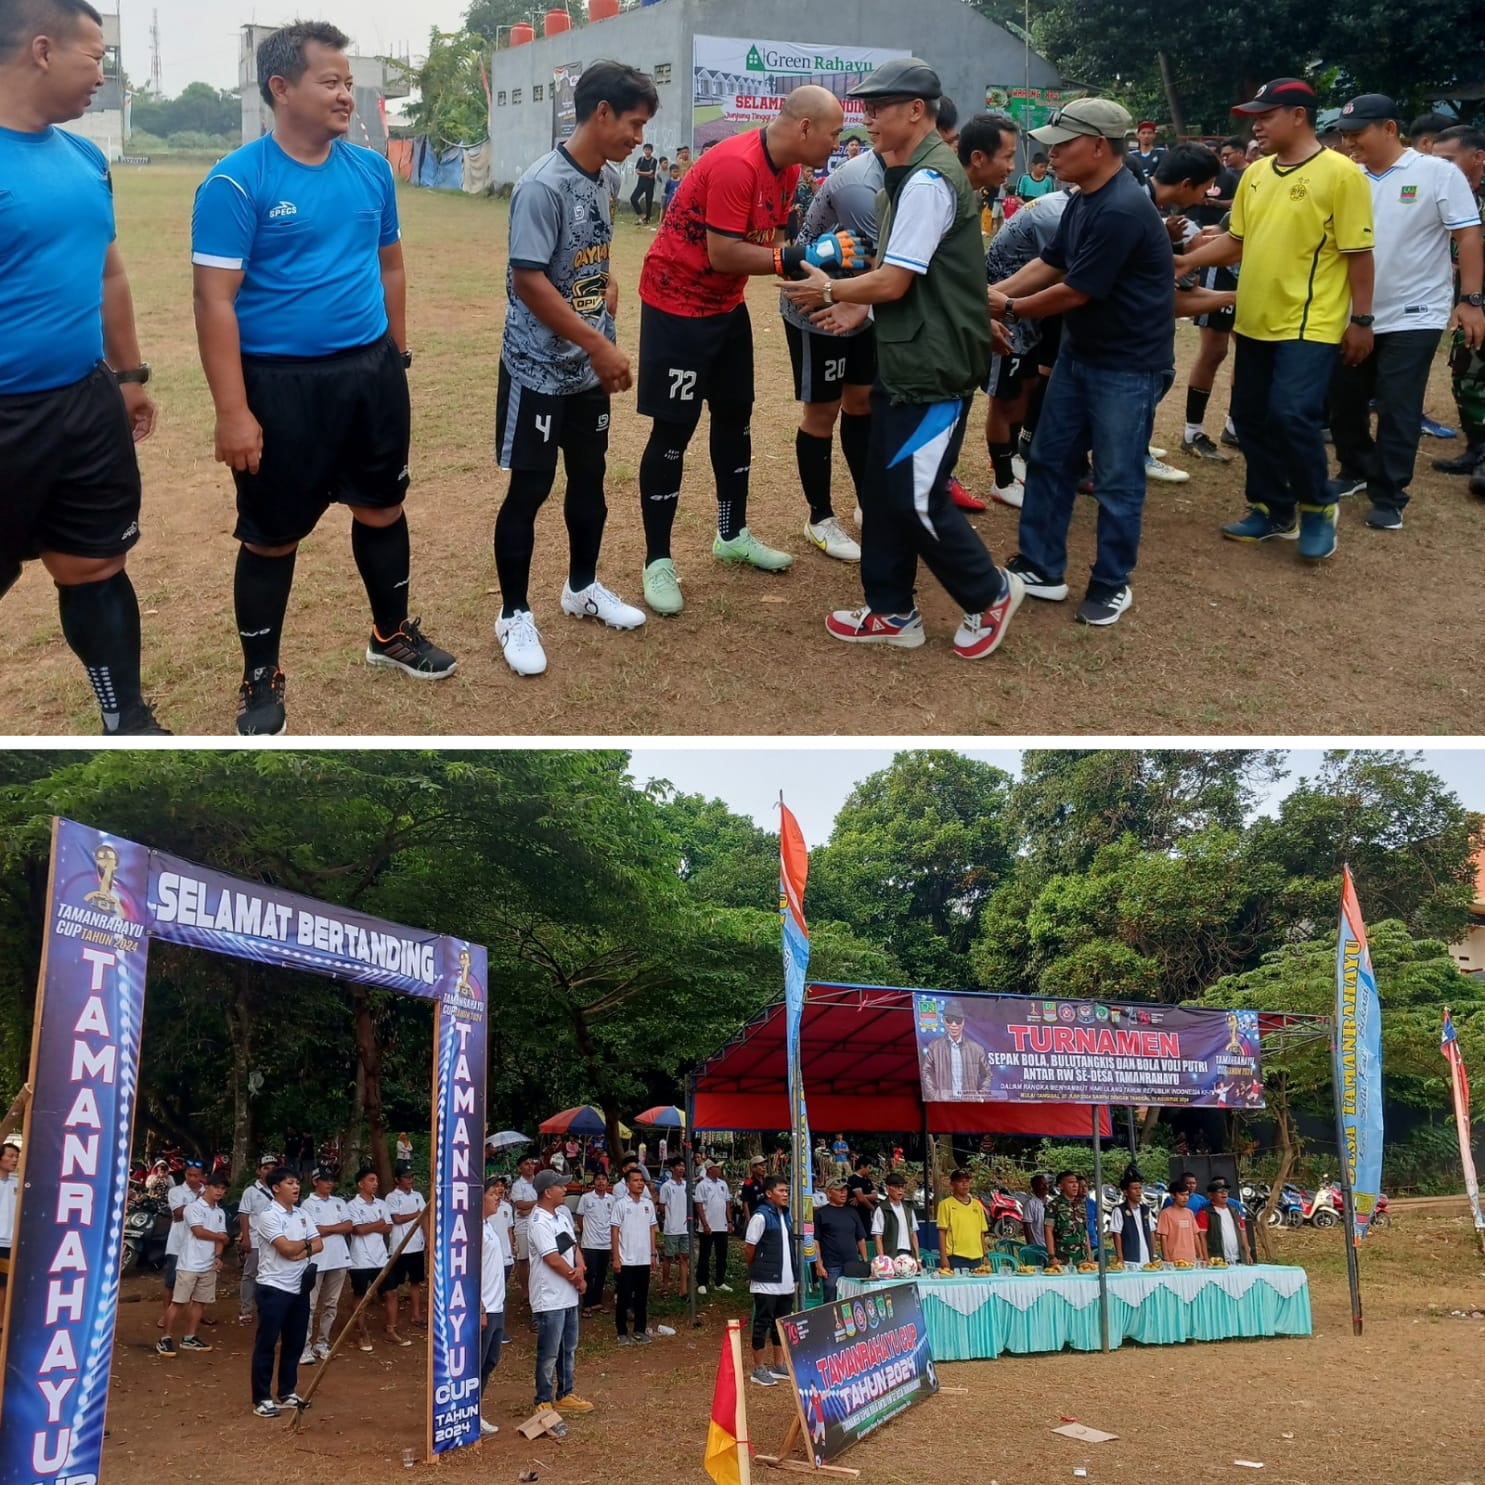 Sambut HUT RI ke-79, Desa Taman Rahayu Gelar Turnamen Olahraga Antar RW - Desapedia